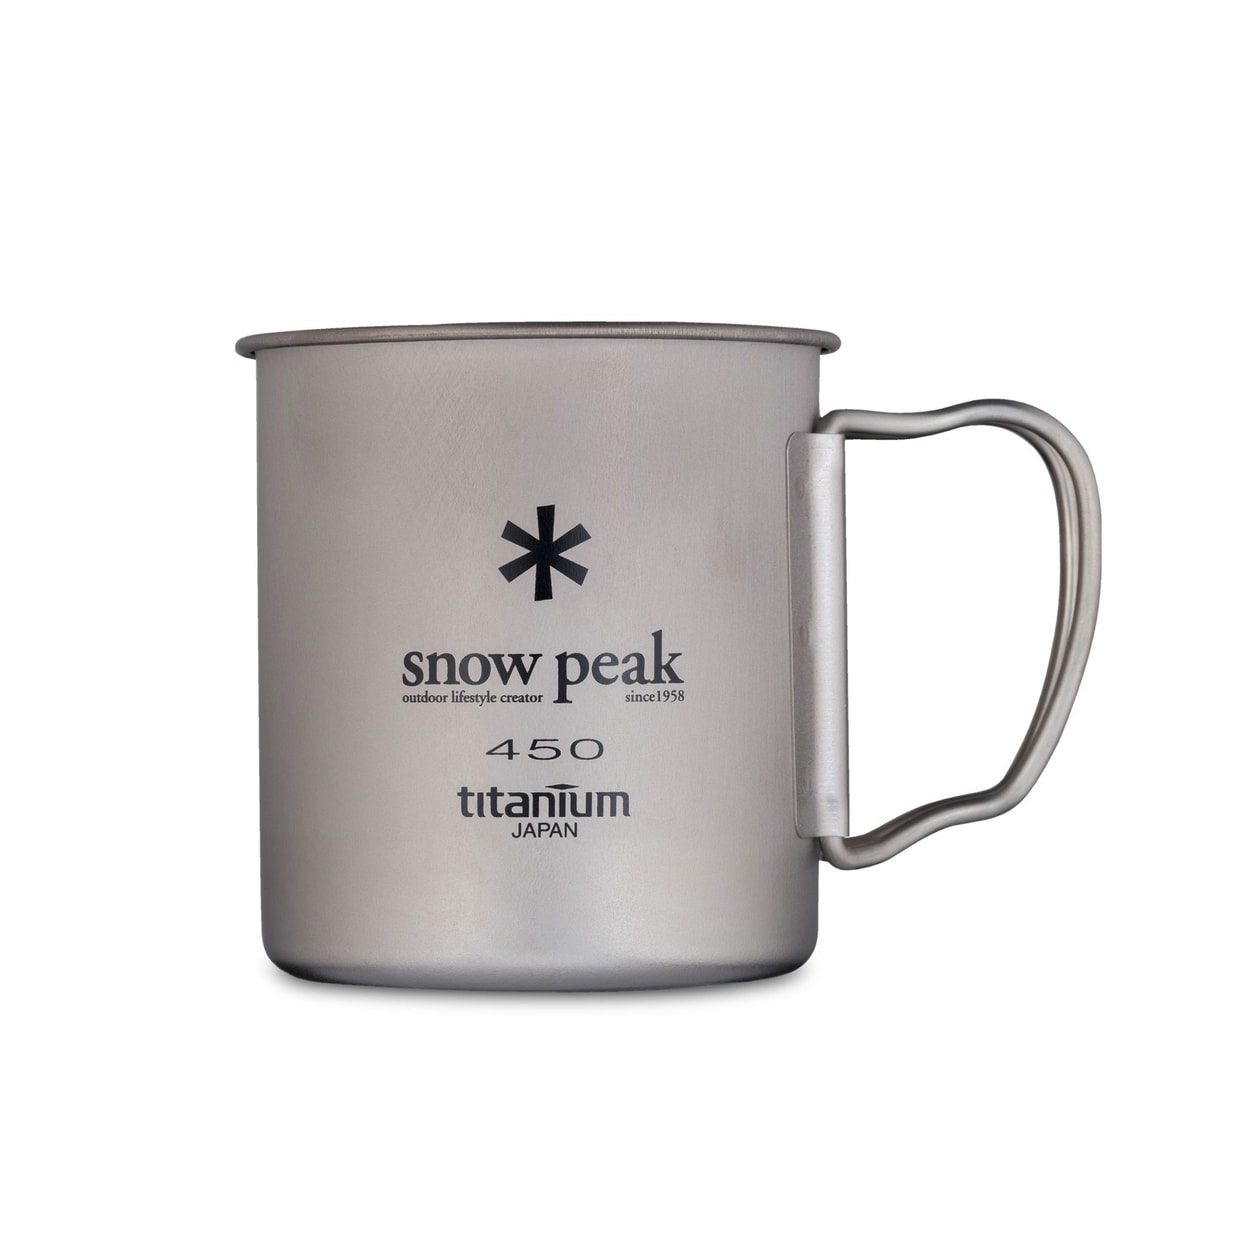 Snow Peak Titanium Cup